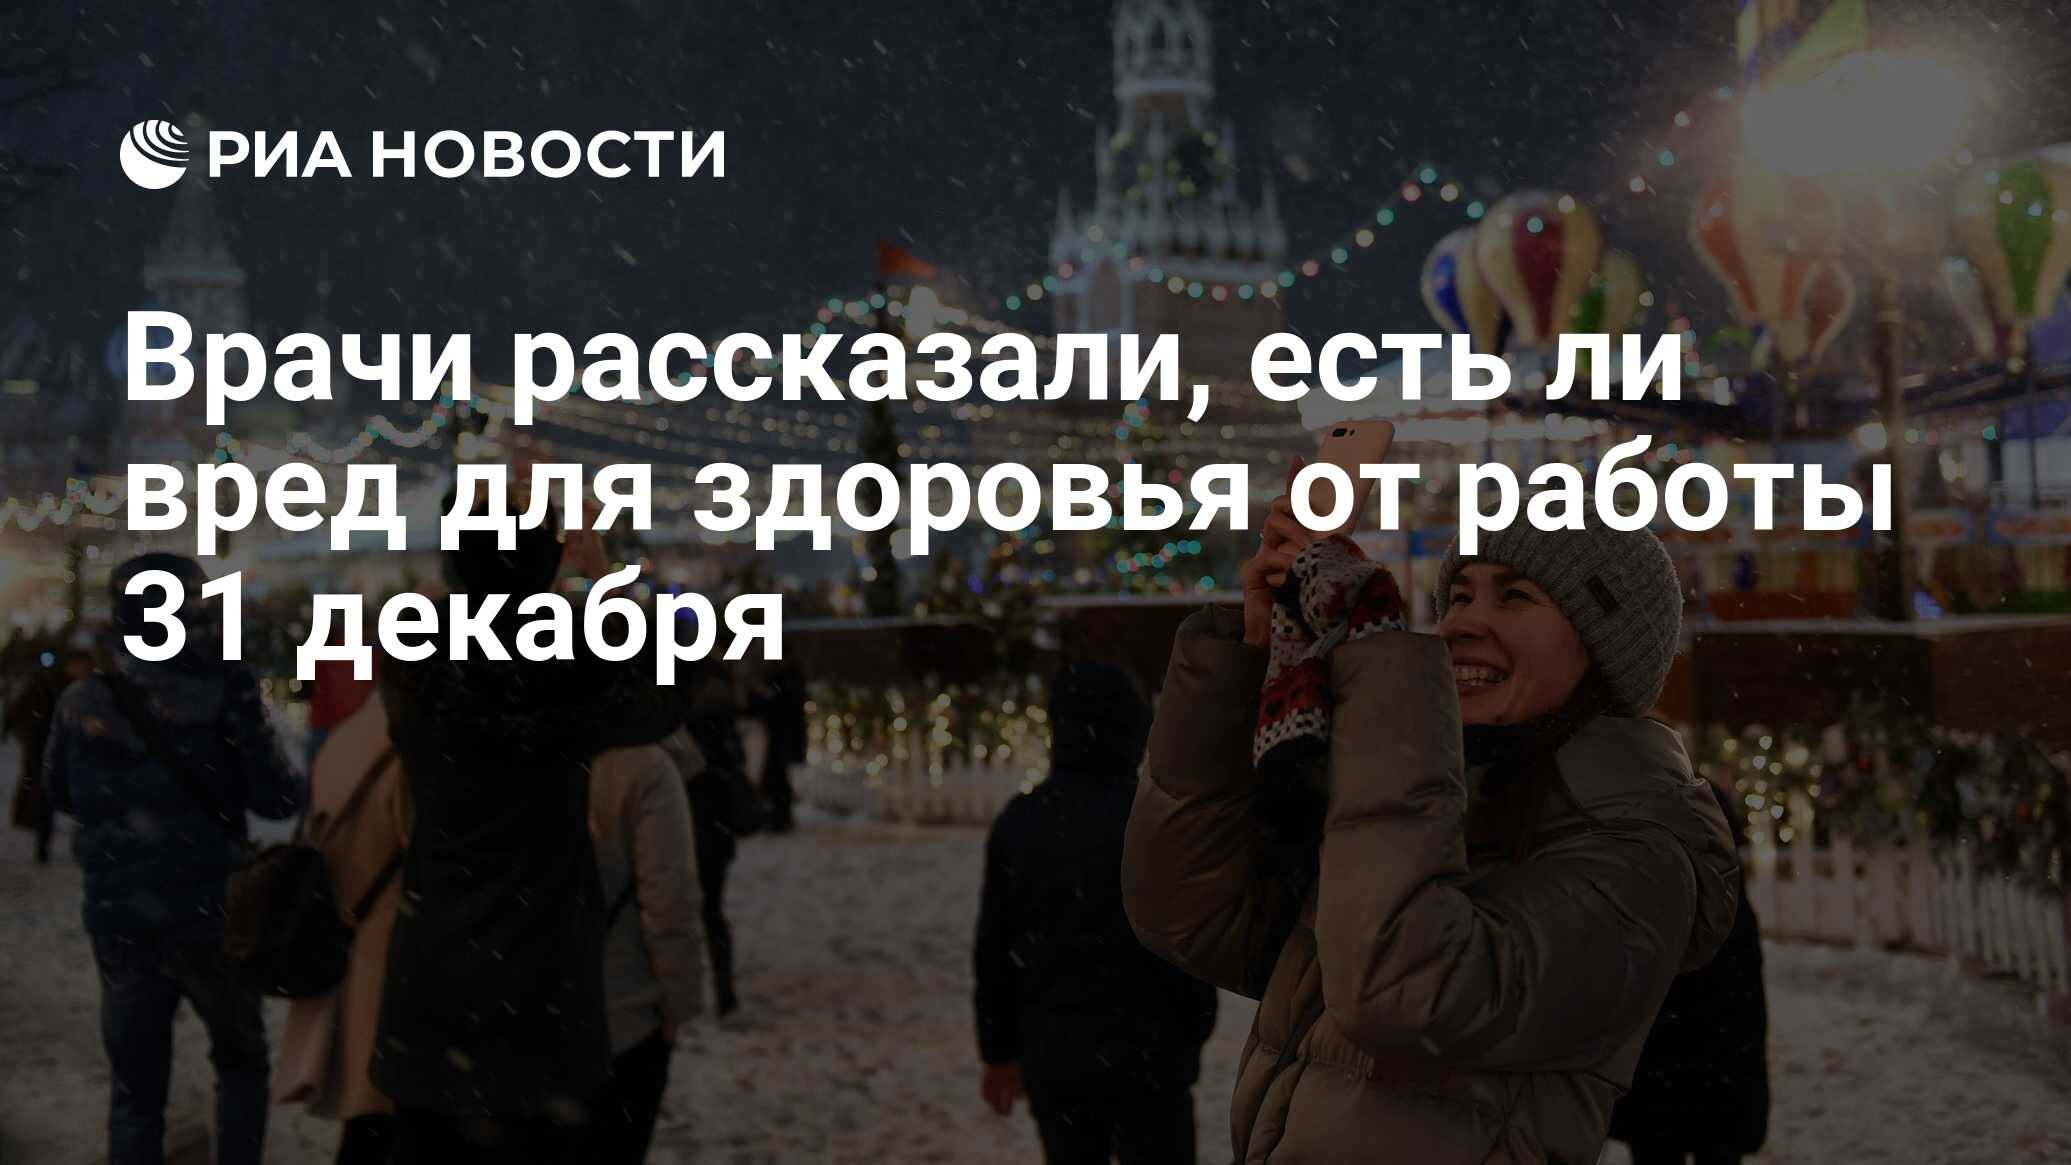 Новогоднее настроение есть у менее трети россиян. Понедельник объявлен выходным